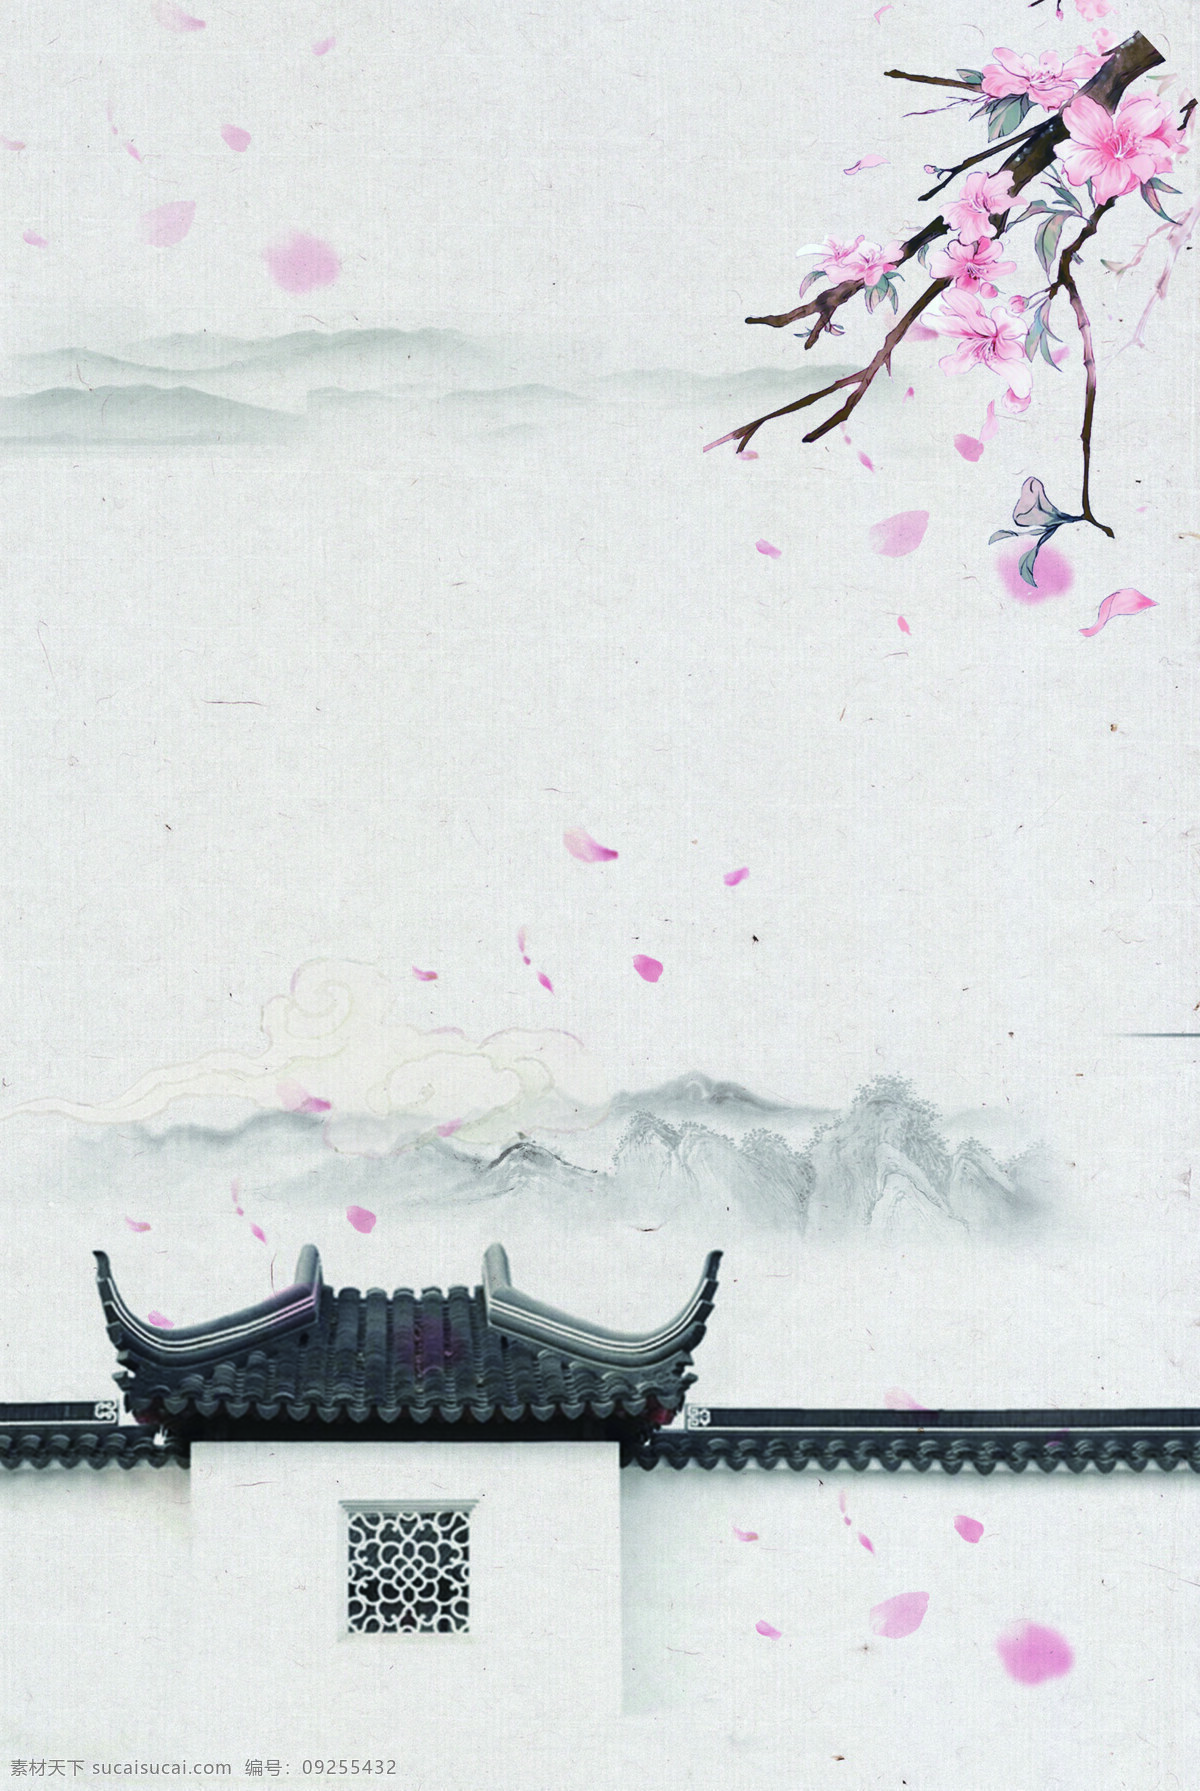 中国 风 水墨 桃花 背景 中国风 简约 水墨画 山峰 围墙 浪漫 花瓣 海报 广告